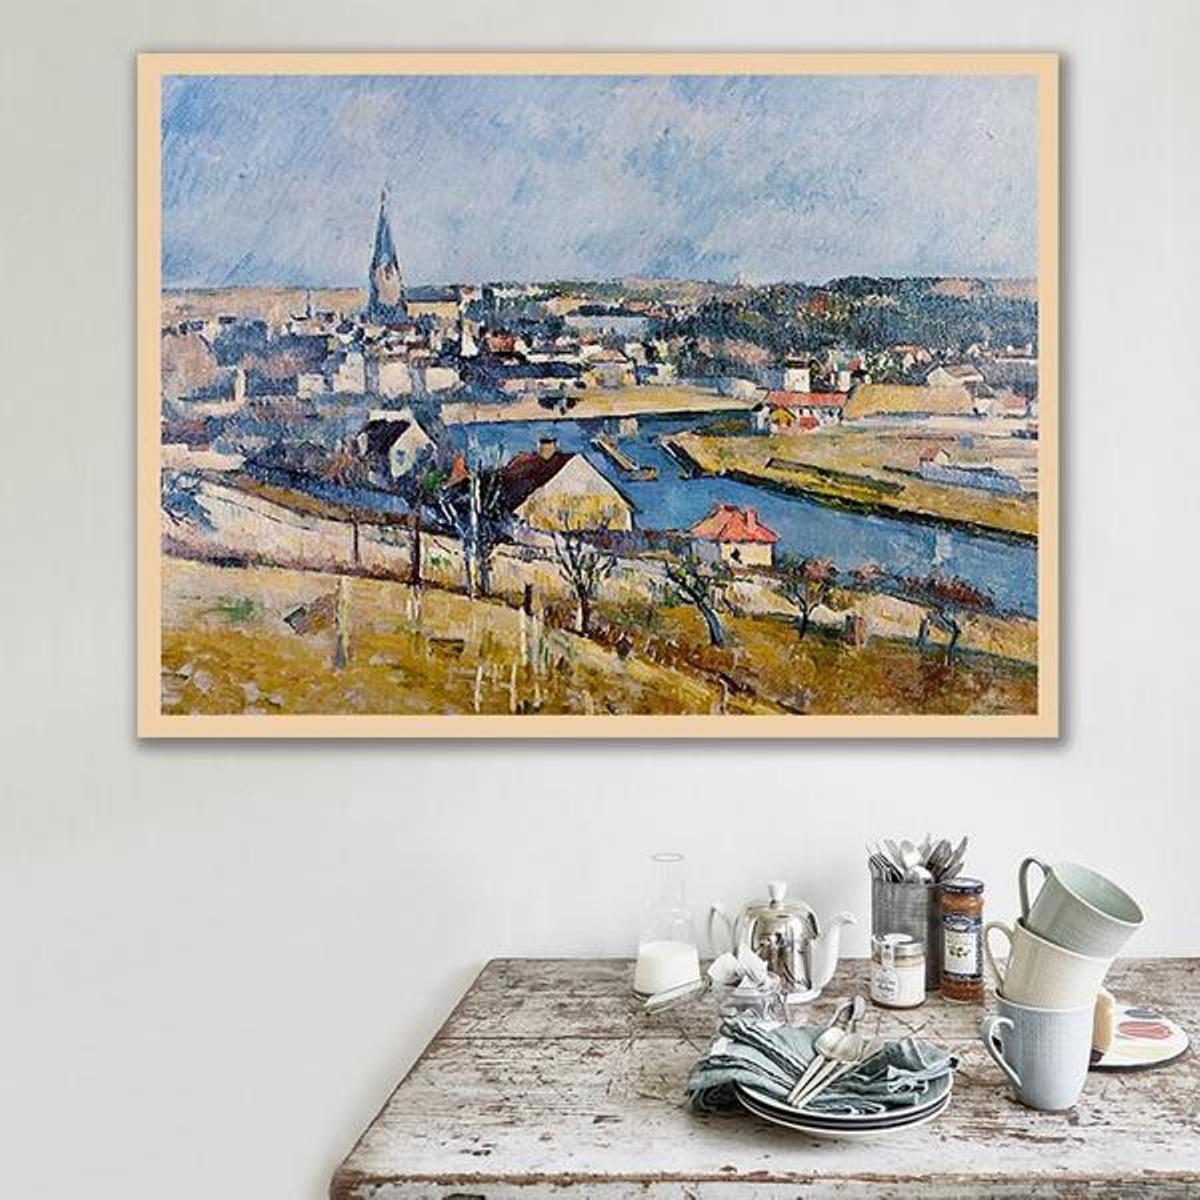 lle de France Landscape by Paul Cezanne - Van-Go Paint-By-Number Kit